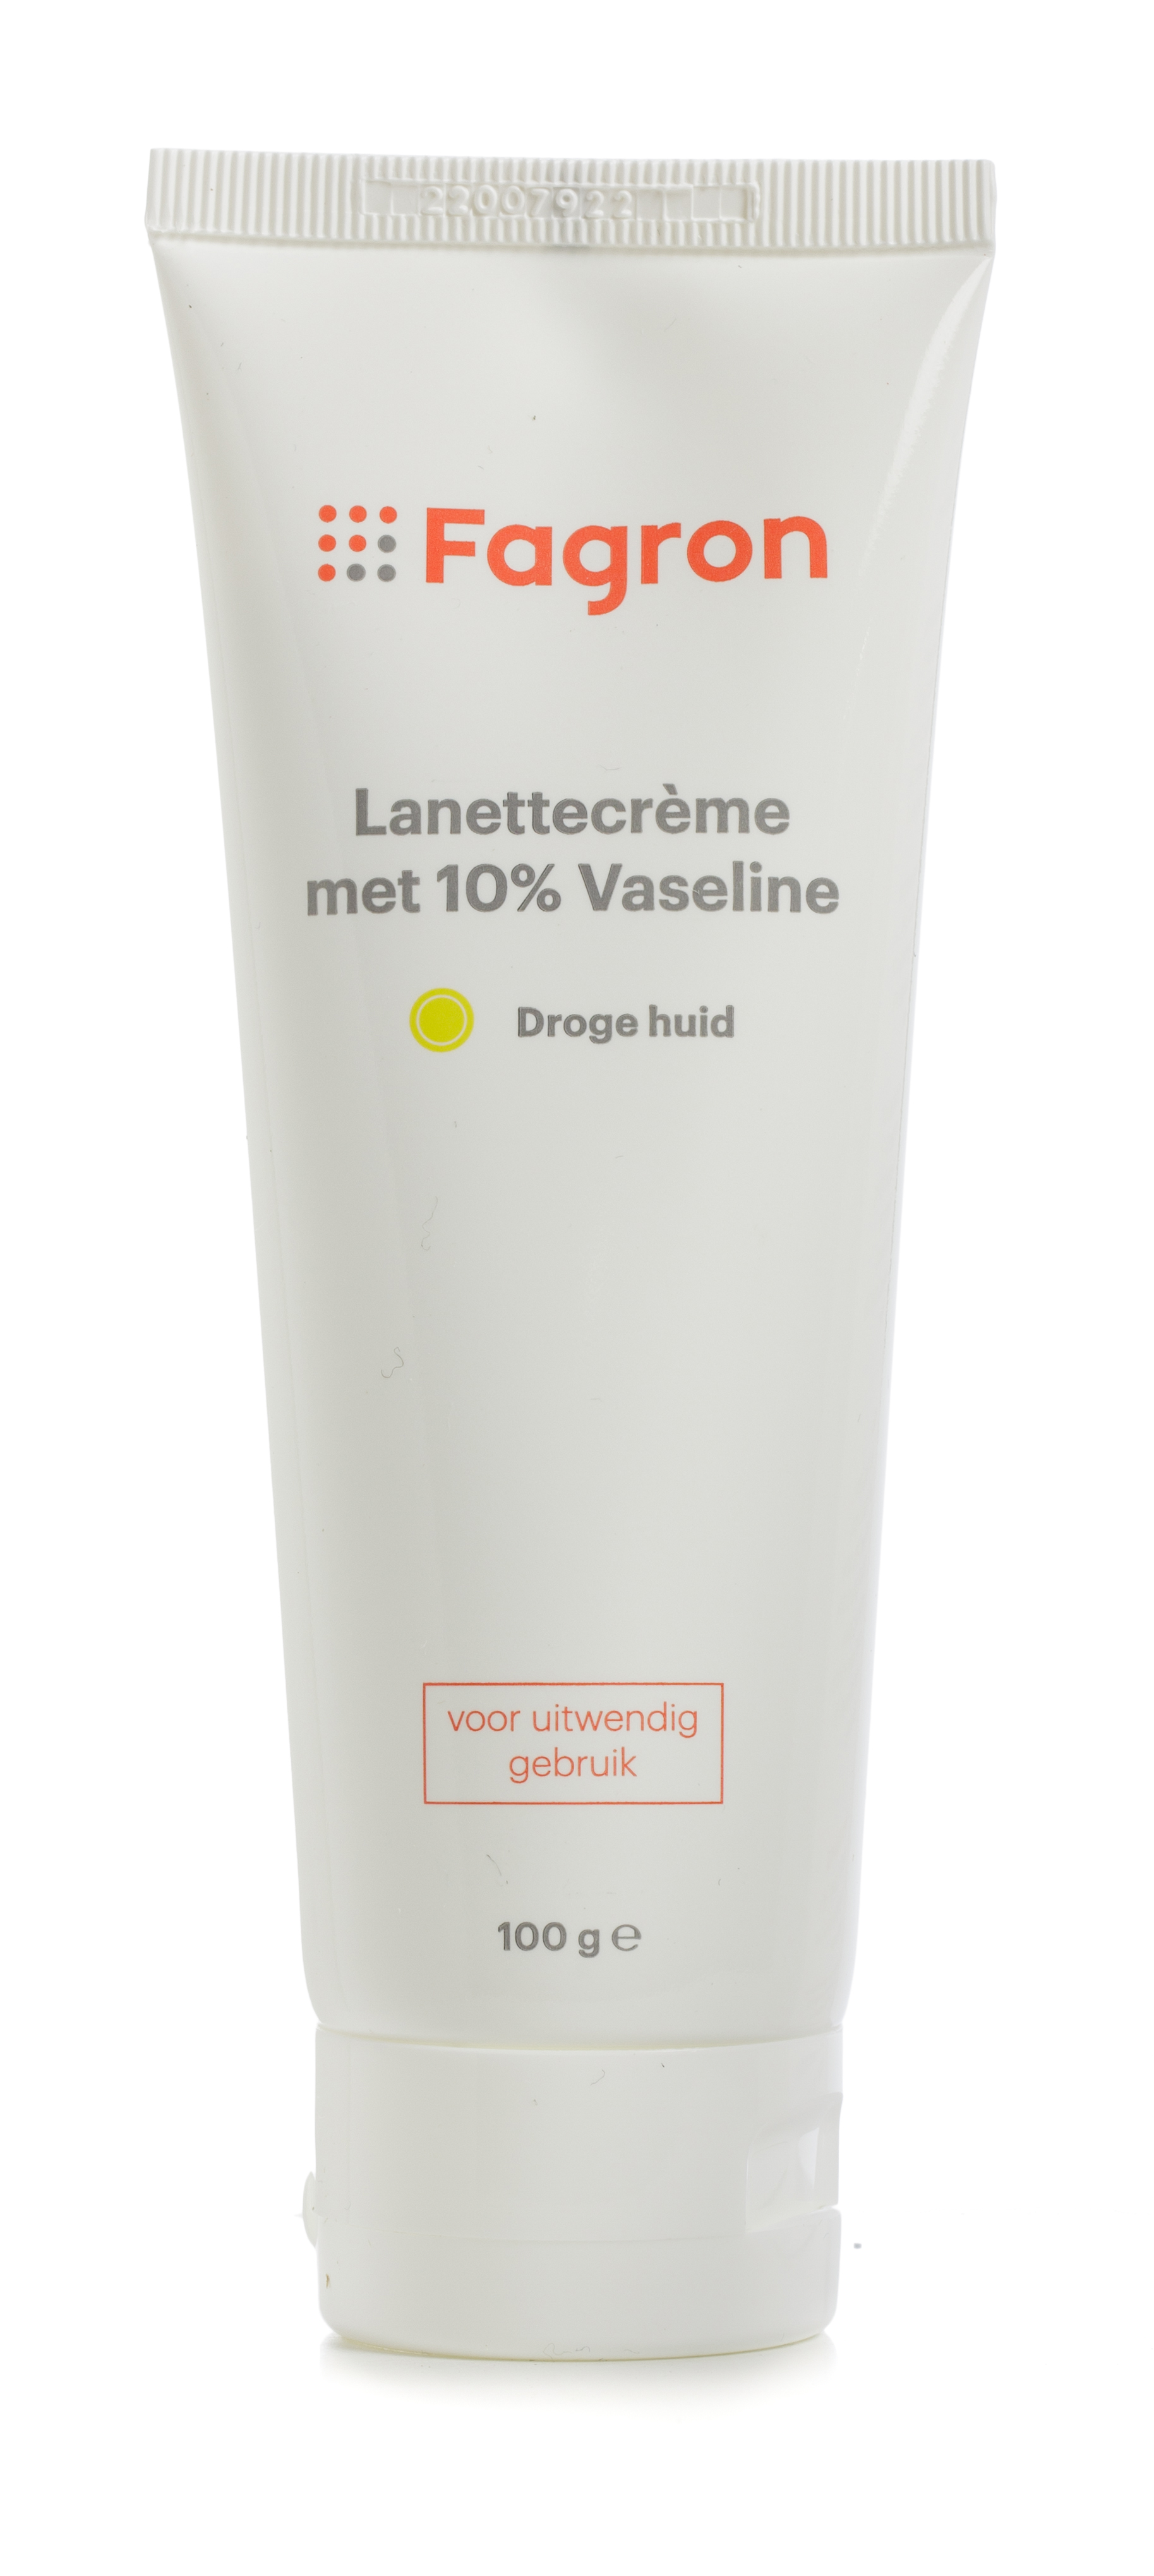 Fagron Lanettecrème 10% Vaseline (100g)